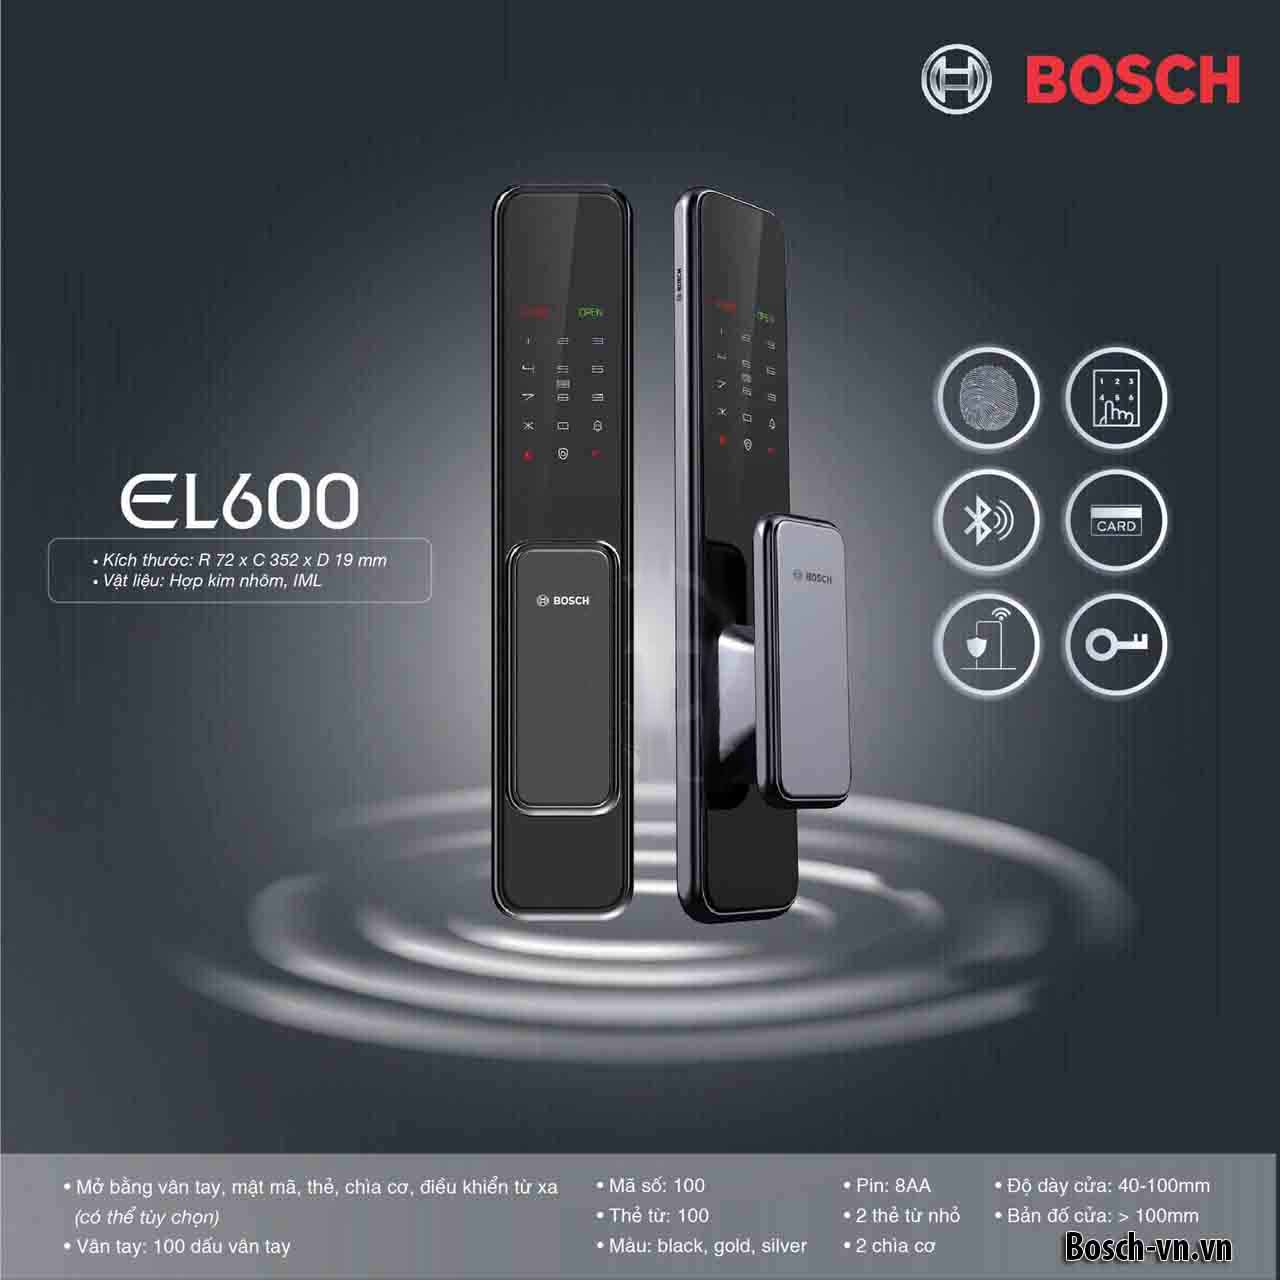 Khóa vân tay Bosch EL600 cho bạn sự an toàn 